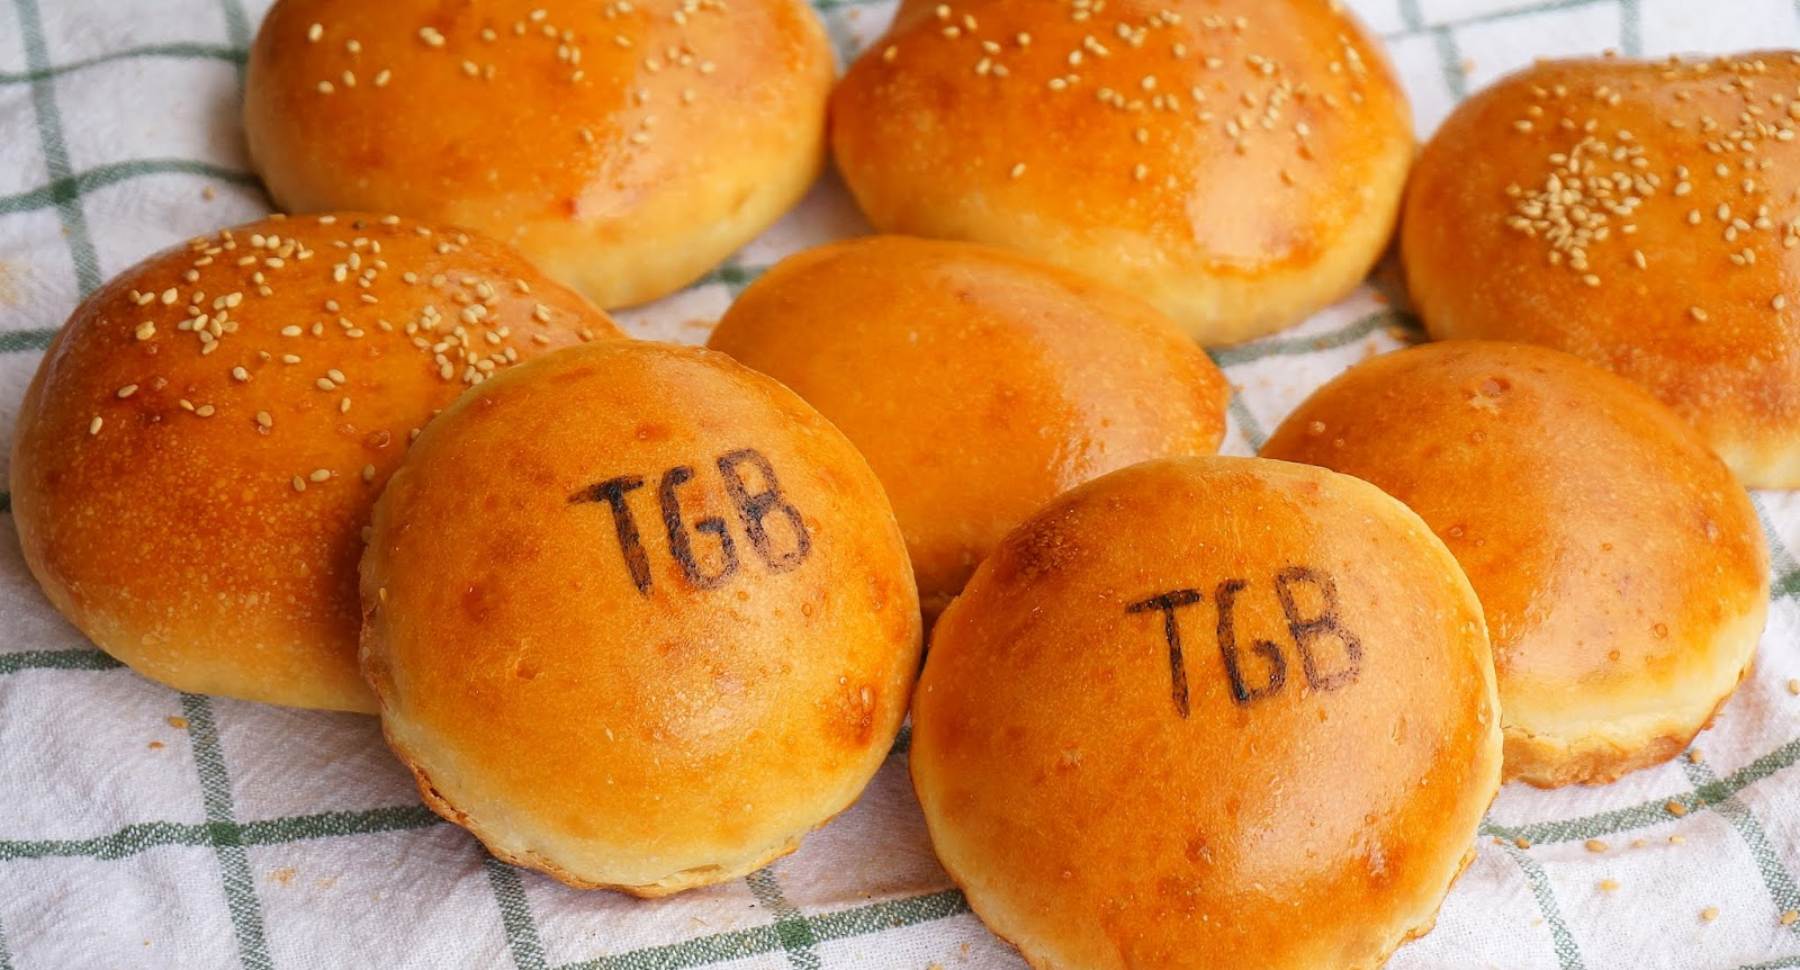 Te encanta el pan de hamburguesa de TGB? ¡Tenemos la receta!